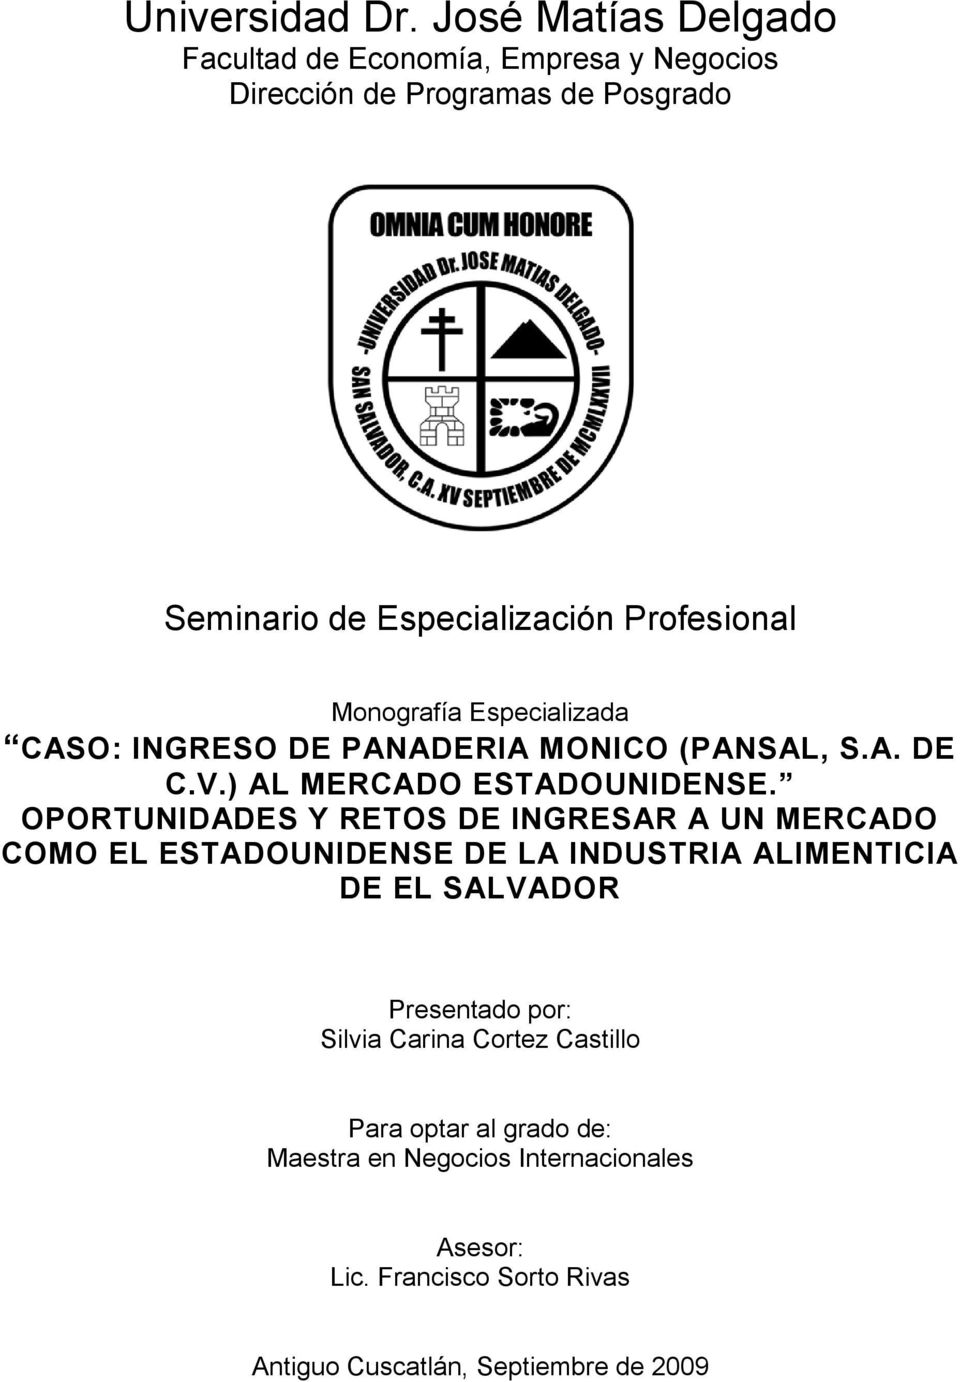 Monografía Especializada CASO: INGRESO DE PANADERIA MONICO (PANSAL, S.A. DE C.V.) AL MERCADO ESTADOUNIDENSE.